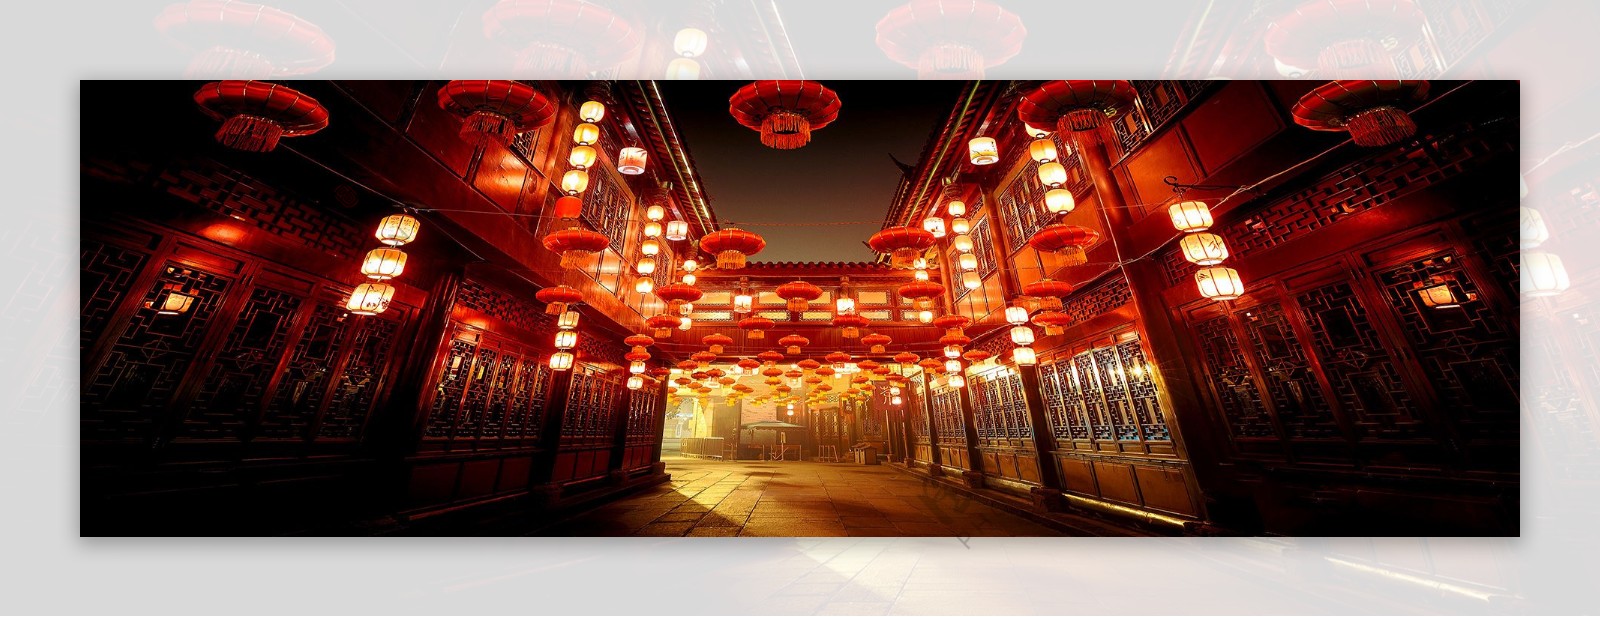 中式街道建筑红色灯笼喜庆